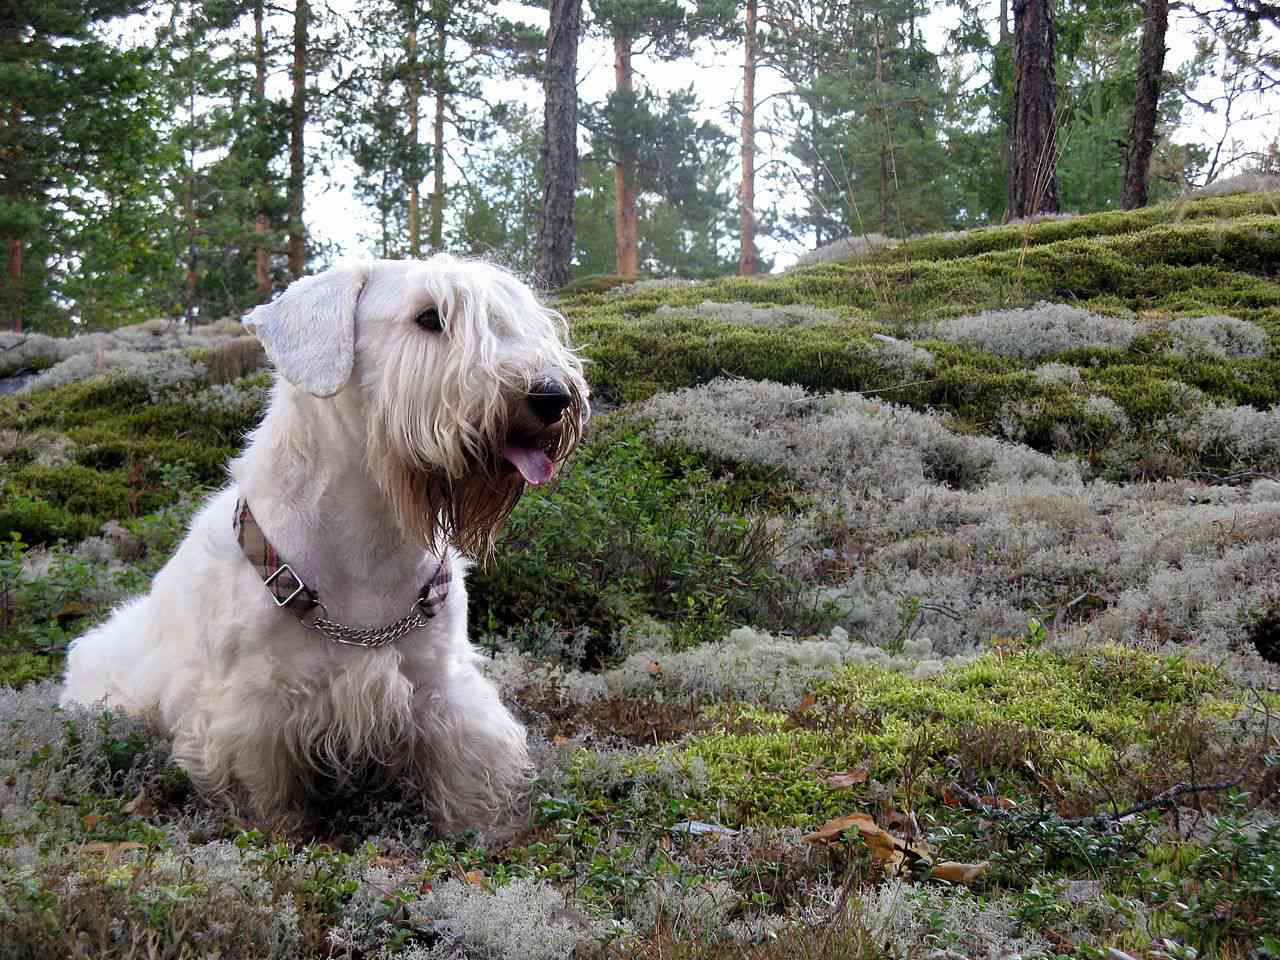 Sealyham Terrier in forest shrubs